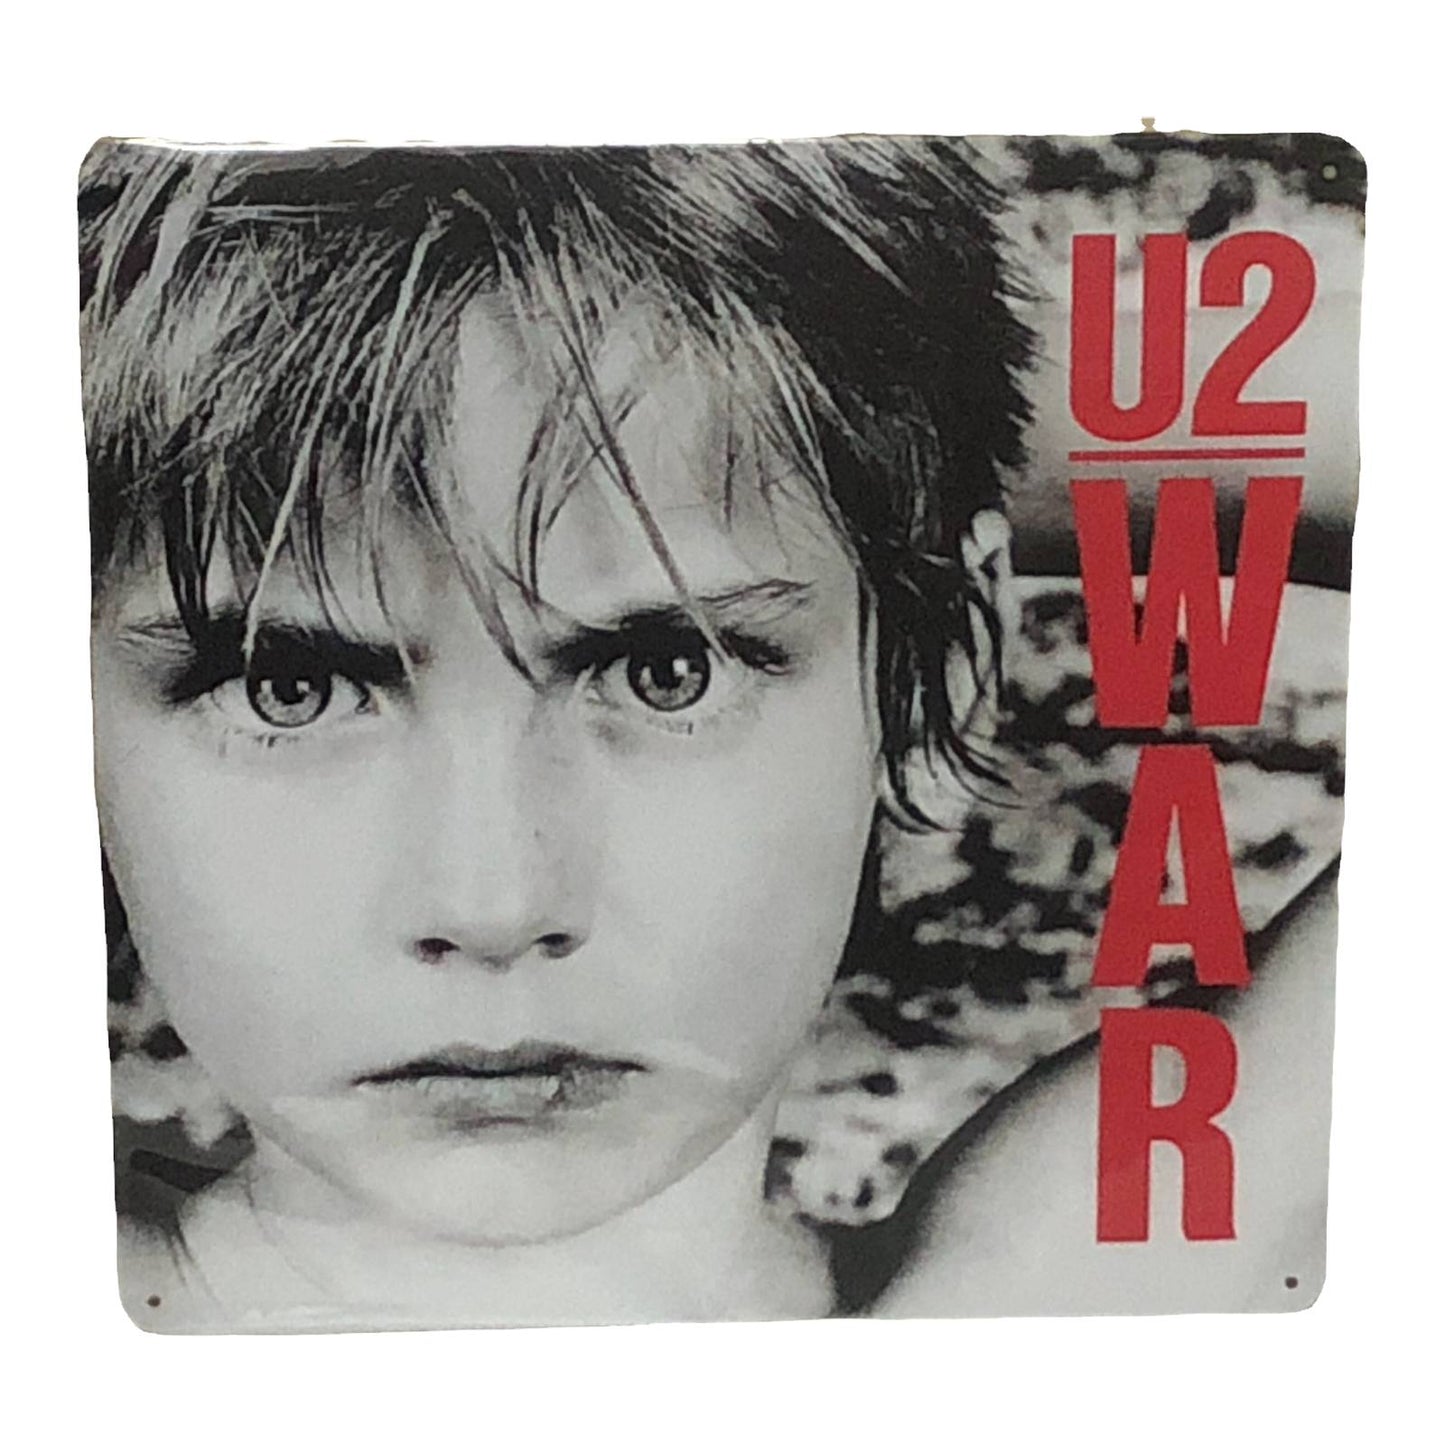 U2 - War Album Cover Metal Print Tin Sign 12"x 12"